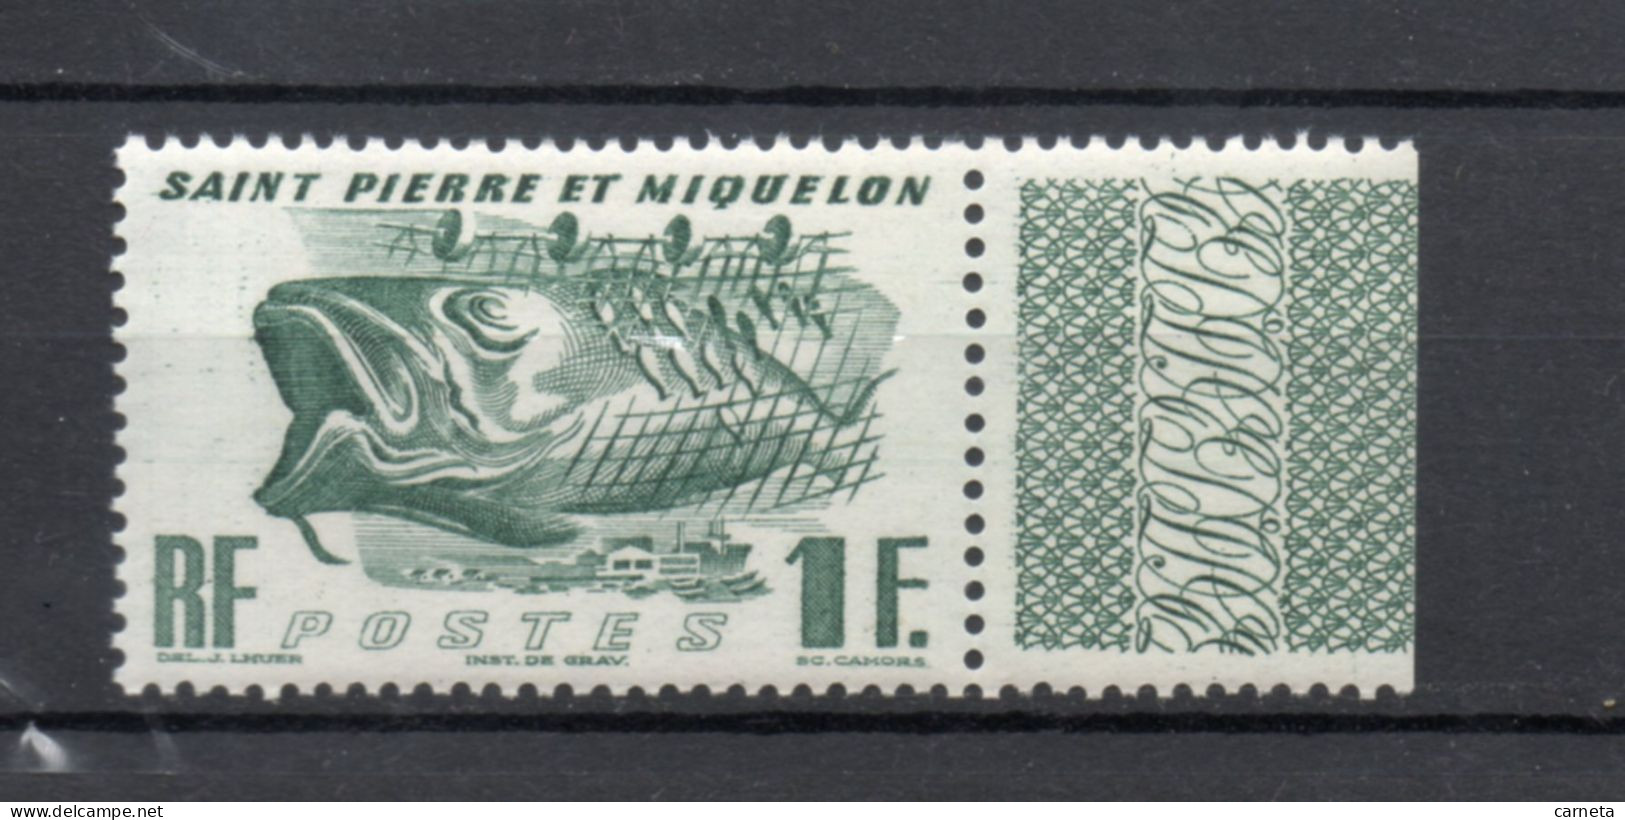 SAINT PIERRE ET MIQUELON N° 331   NEUF SANS CHARNIERE COTE  2.00€   POISSON ANIMAUX - Unused Stamps